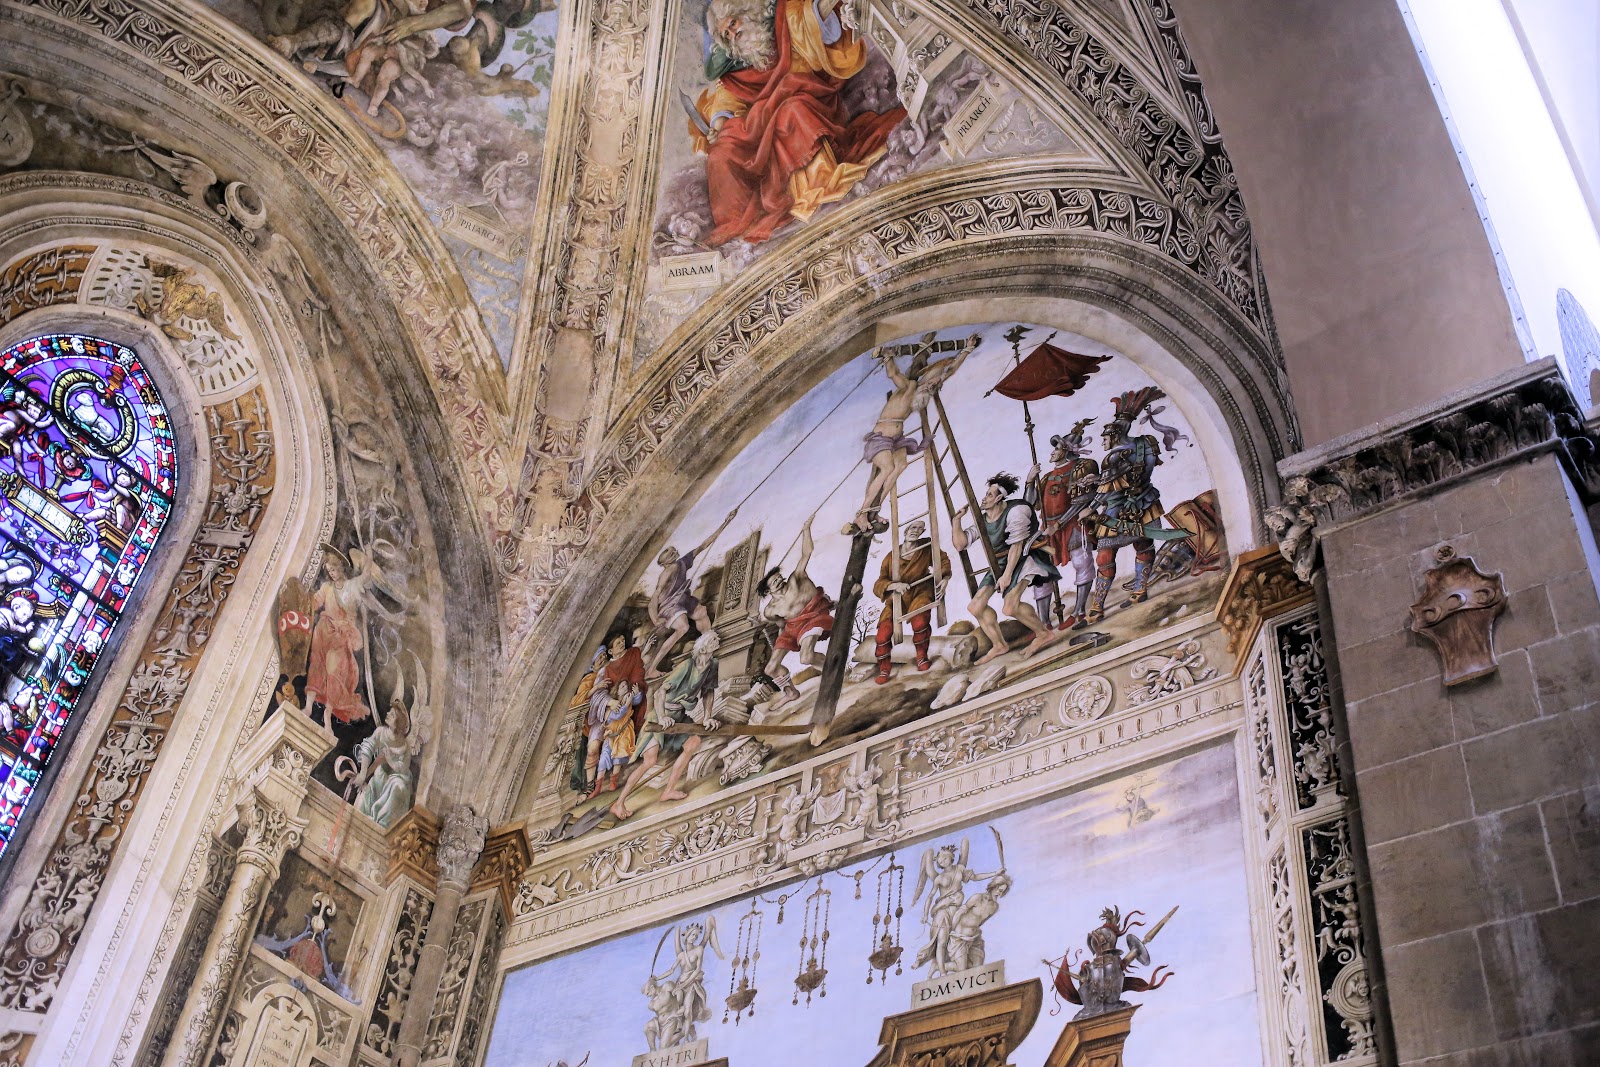 Filippino+Lippi-1457-1504 (17).jpg